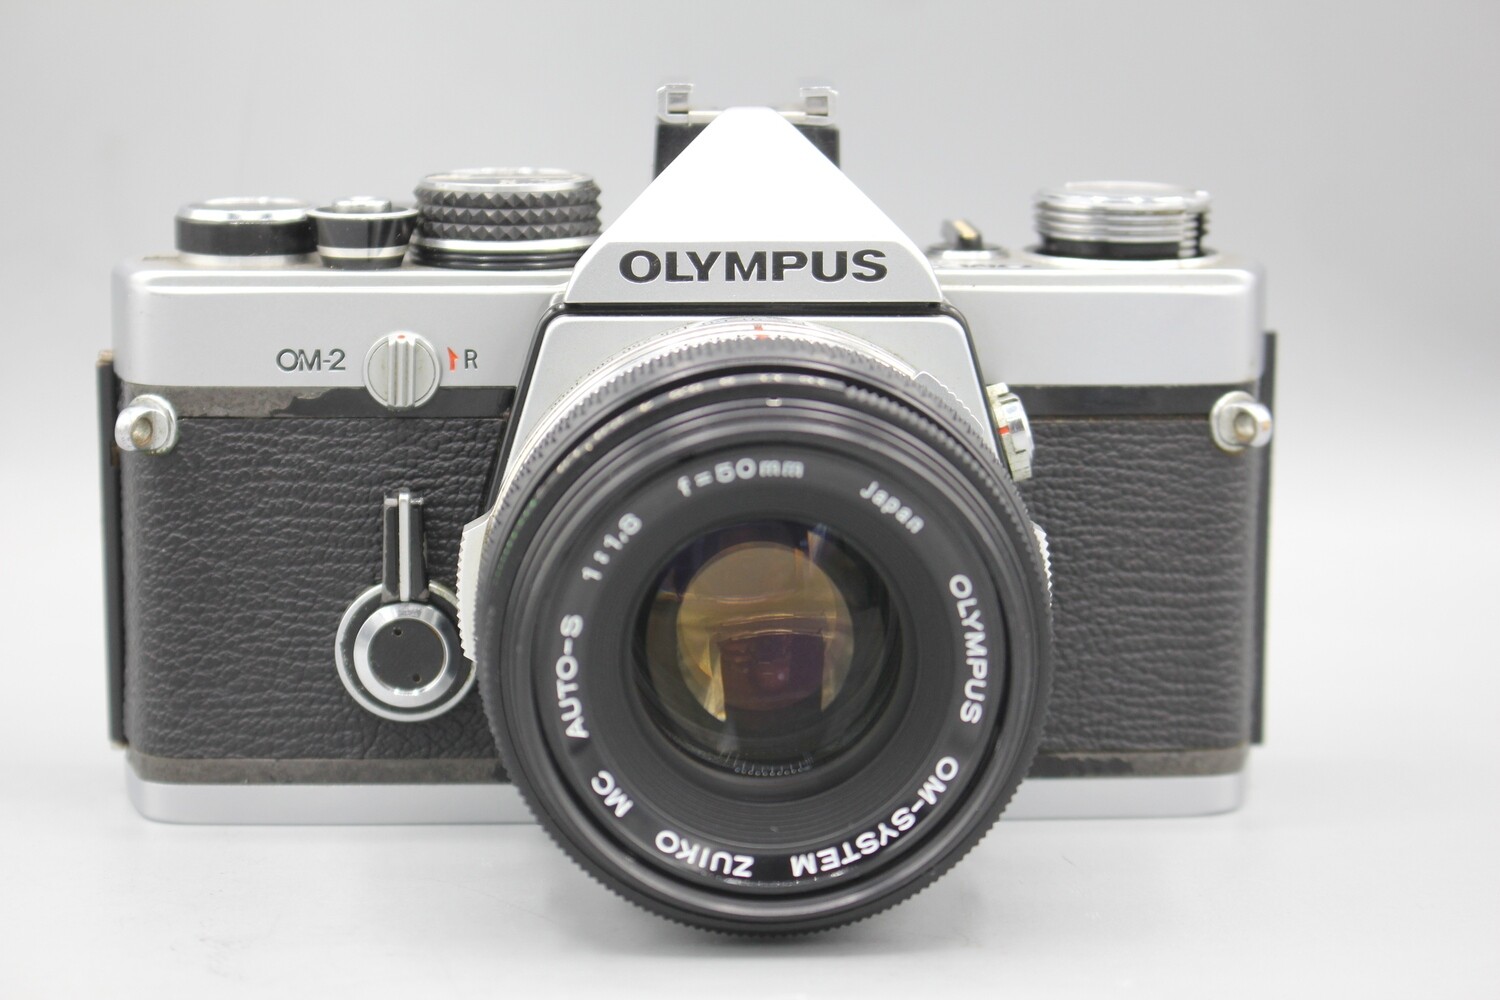 OLYMPUS OM2 35mm SLR CAMERA W 50mm LENS CLAD